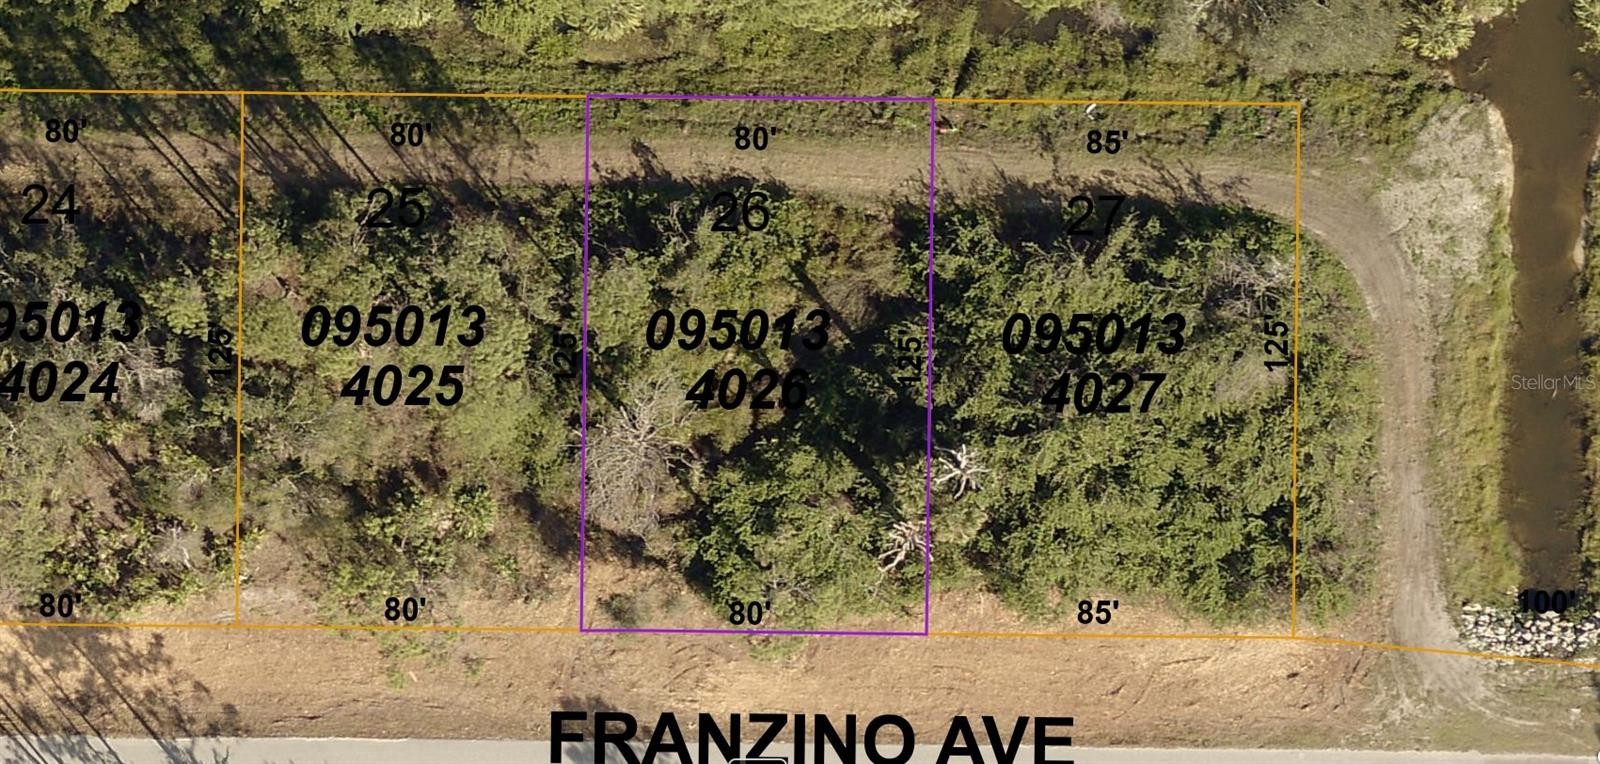 Franzino Ave